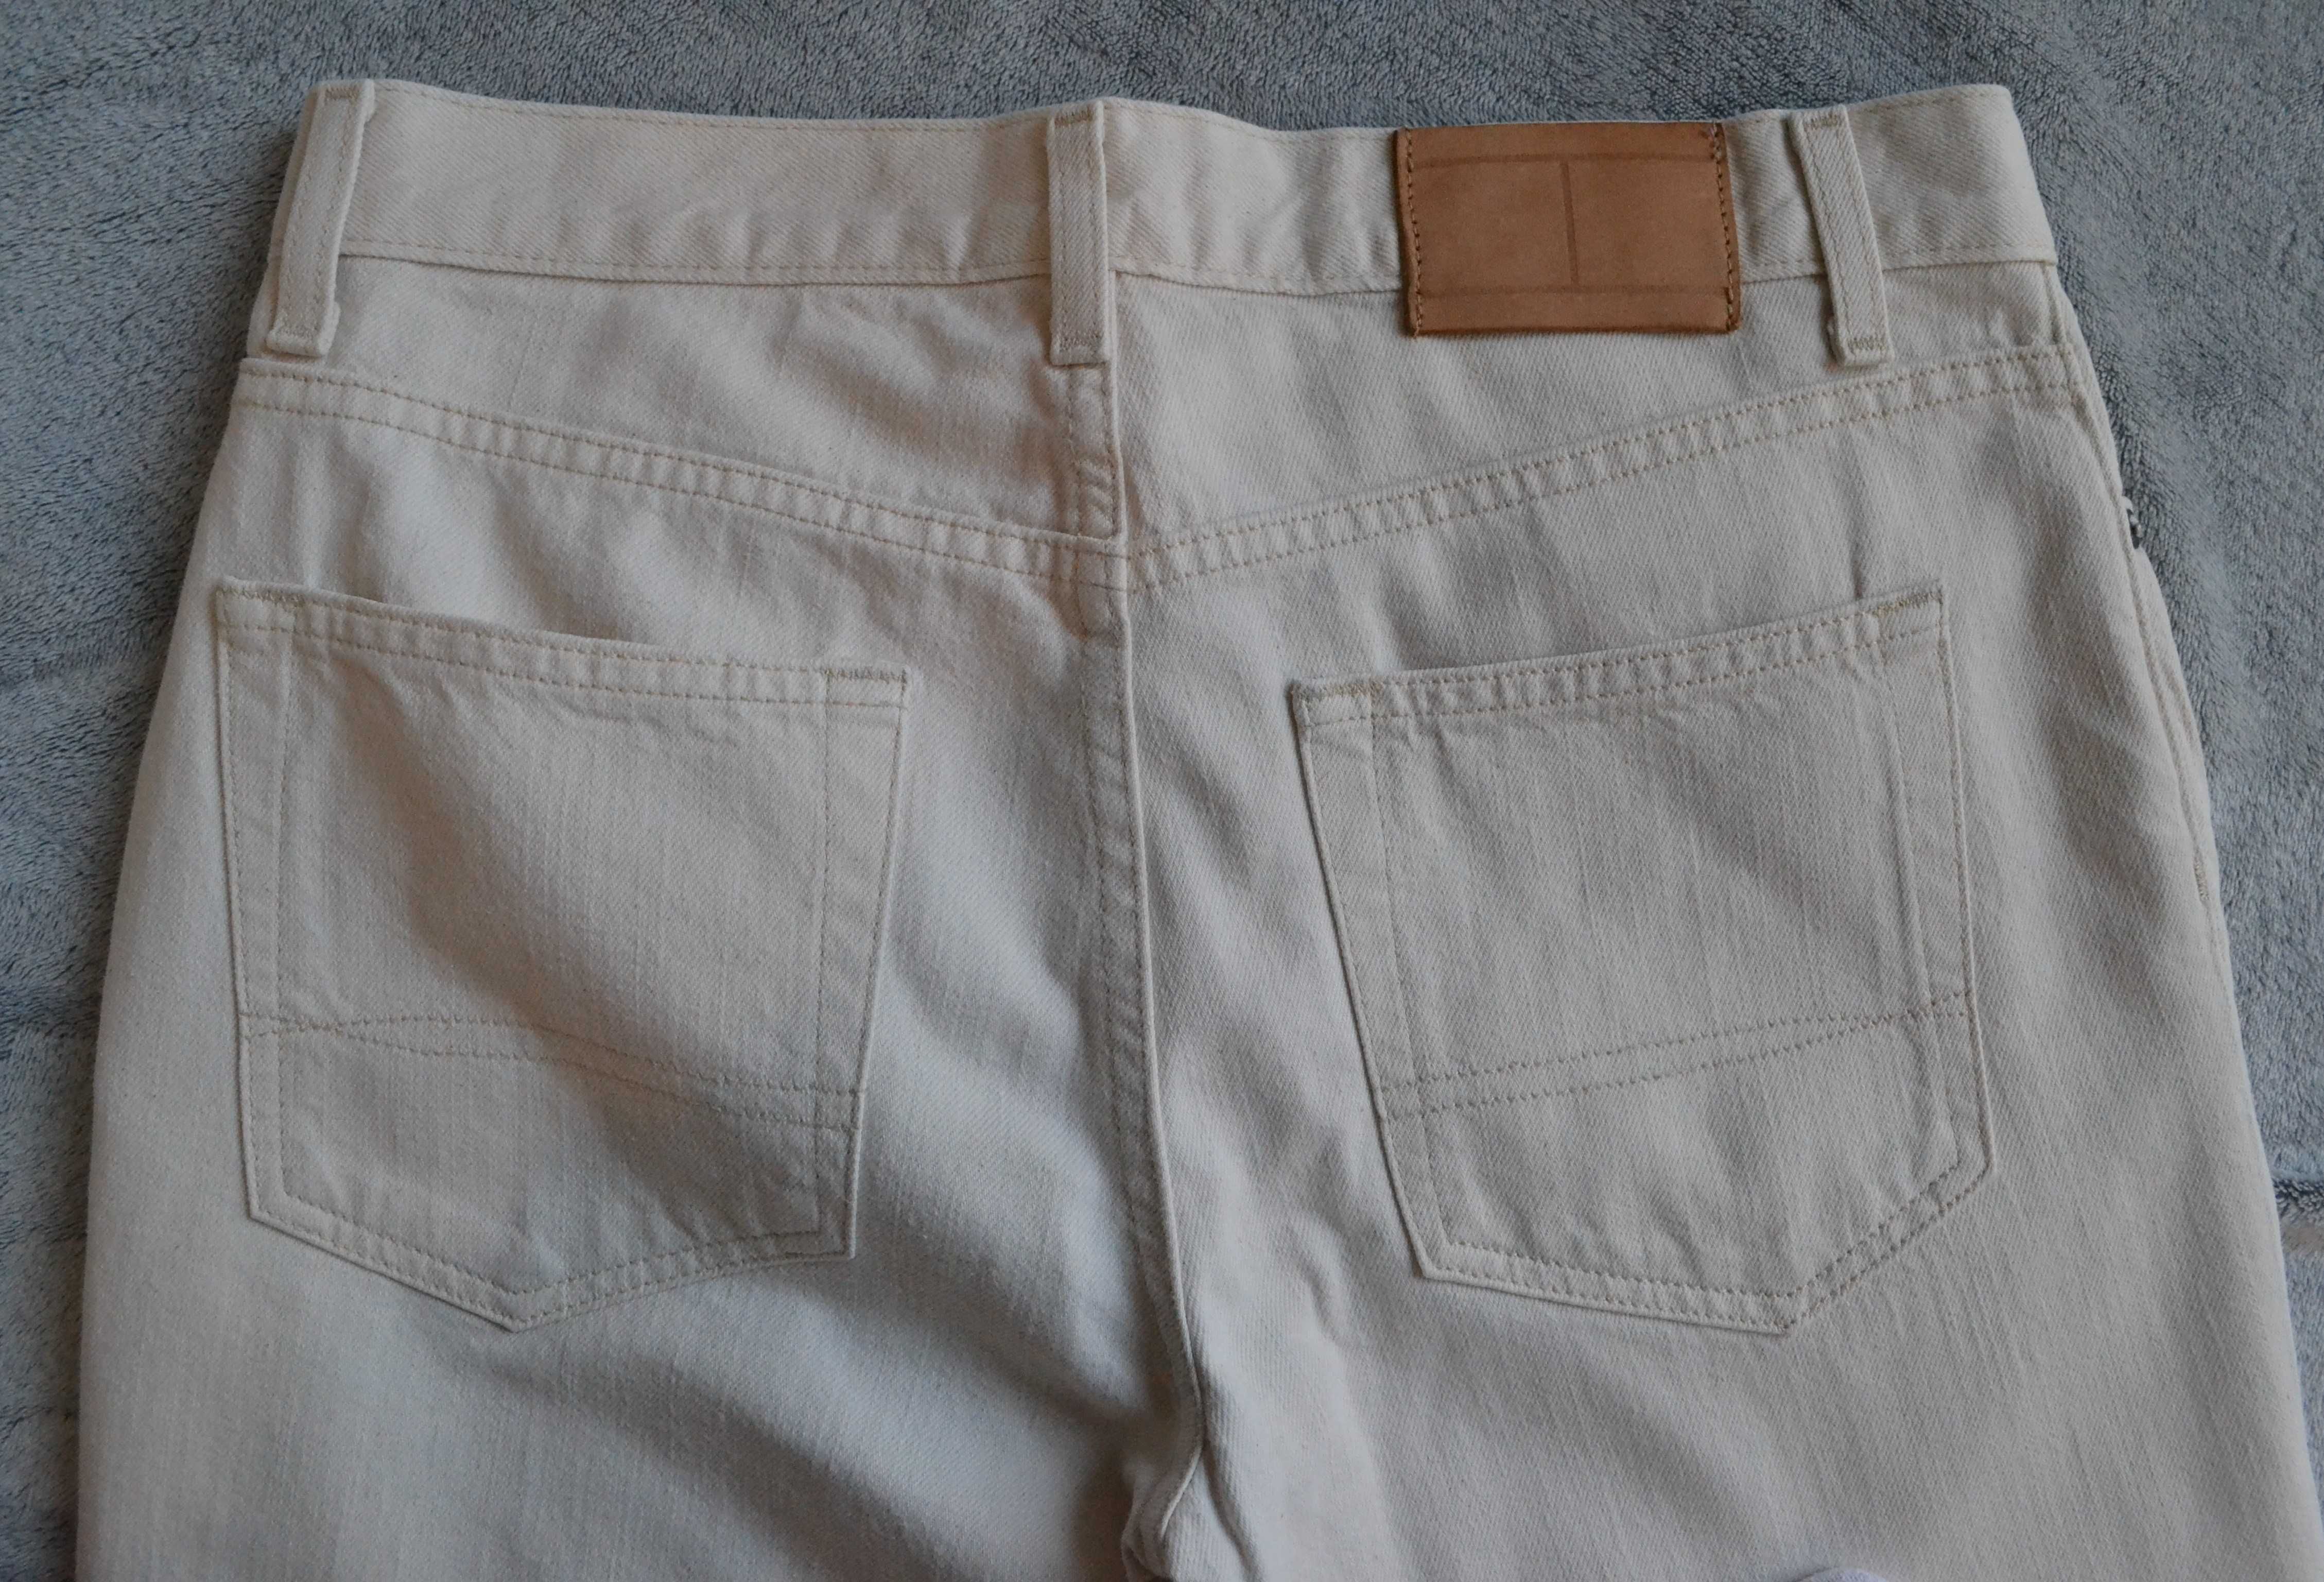 Spodnie jeansy klasyczne Tommy Hilfiger, jasny beż/ 30/32